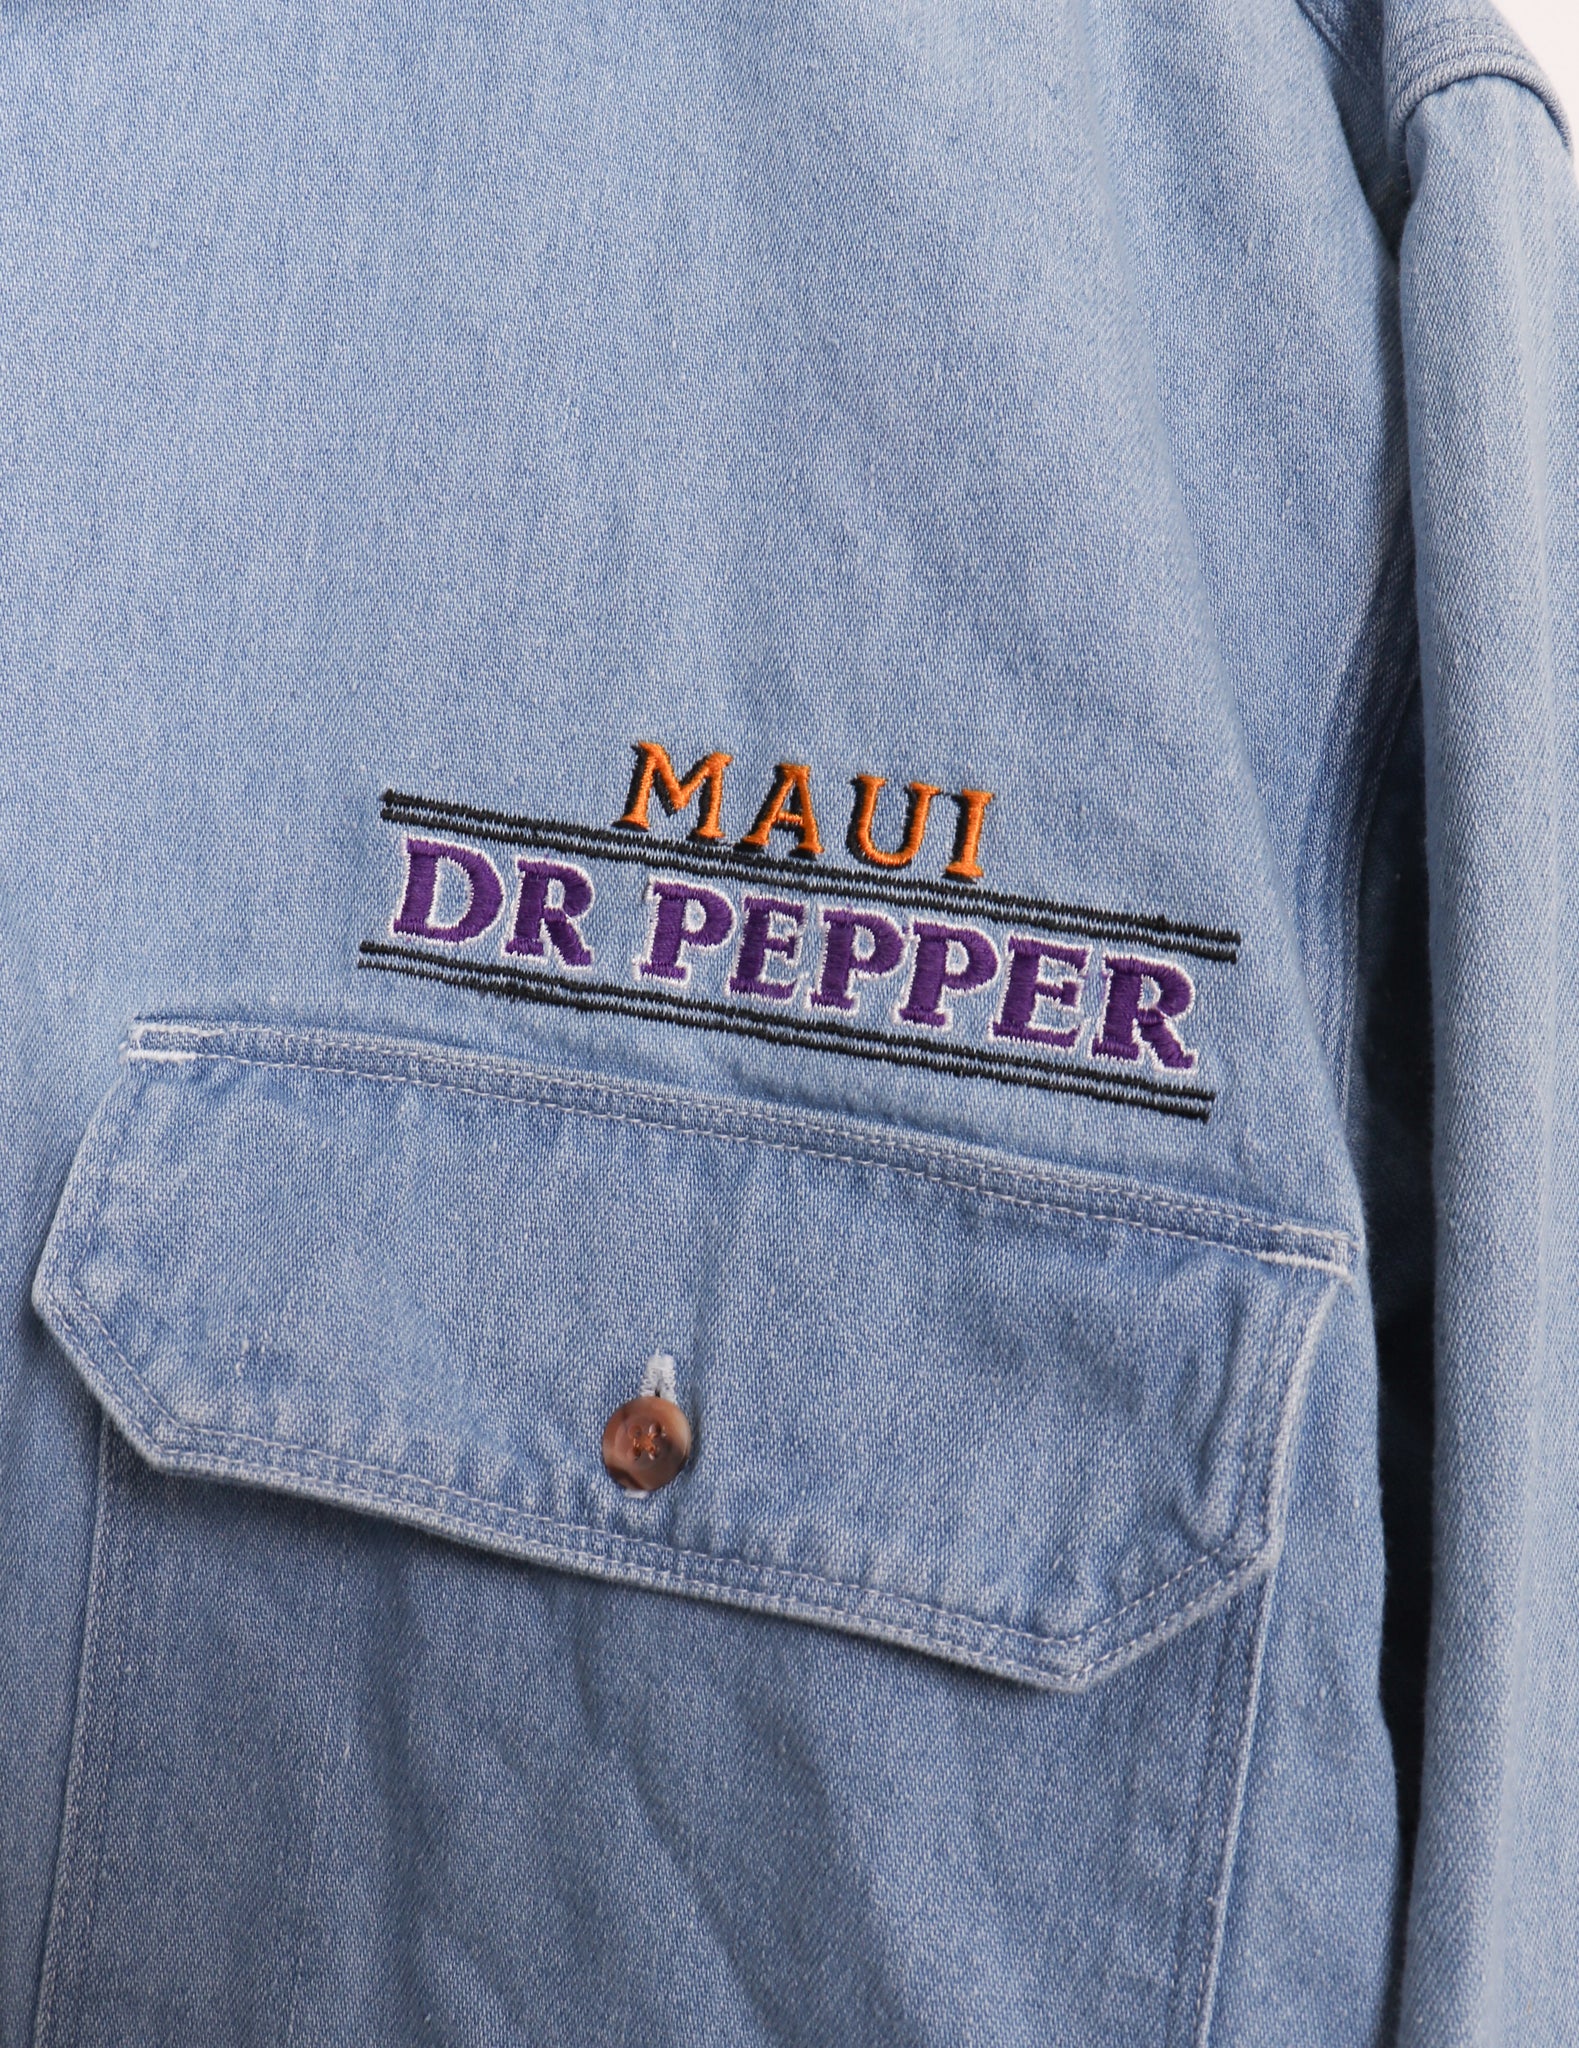 1995 Maui Dr. Pepper International Bottler Meeting Denim Button Up